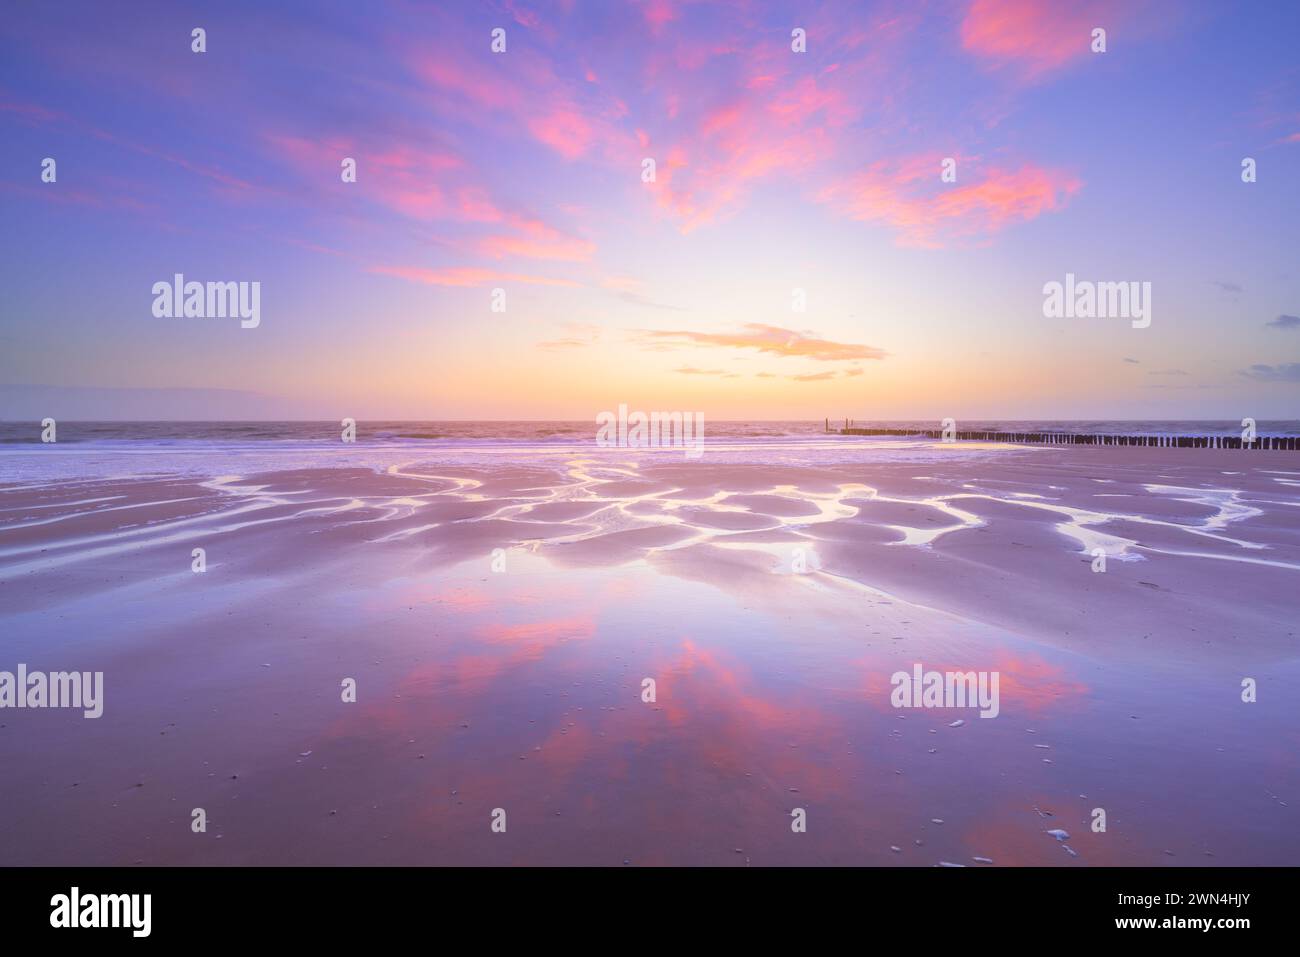 Ein Himmel voller Sonnenuntergang spiegelt sich auf dem nassen Sand des Zoutelande Strandes während eines beruhigenden Sonnenuntergangs an einem ruhigen und schönen Abend, das Wasser fließt. Stockfoto